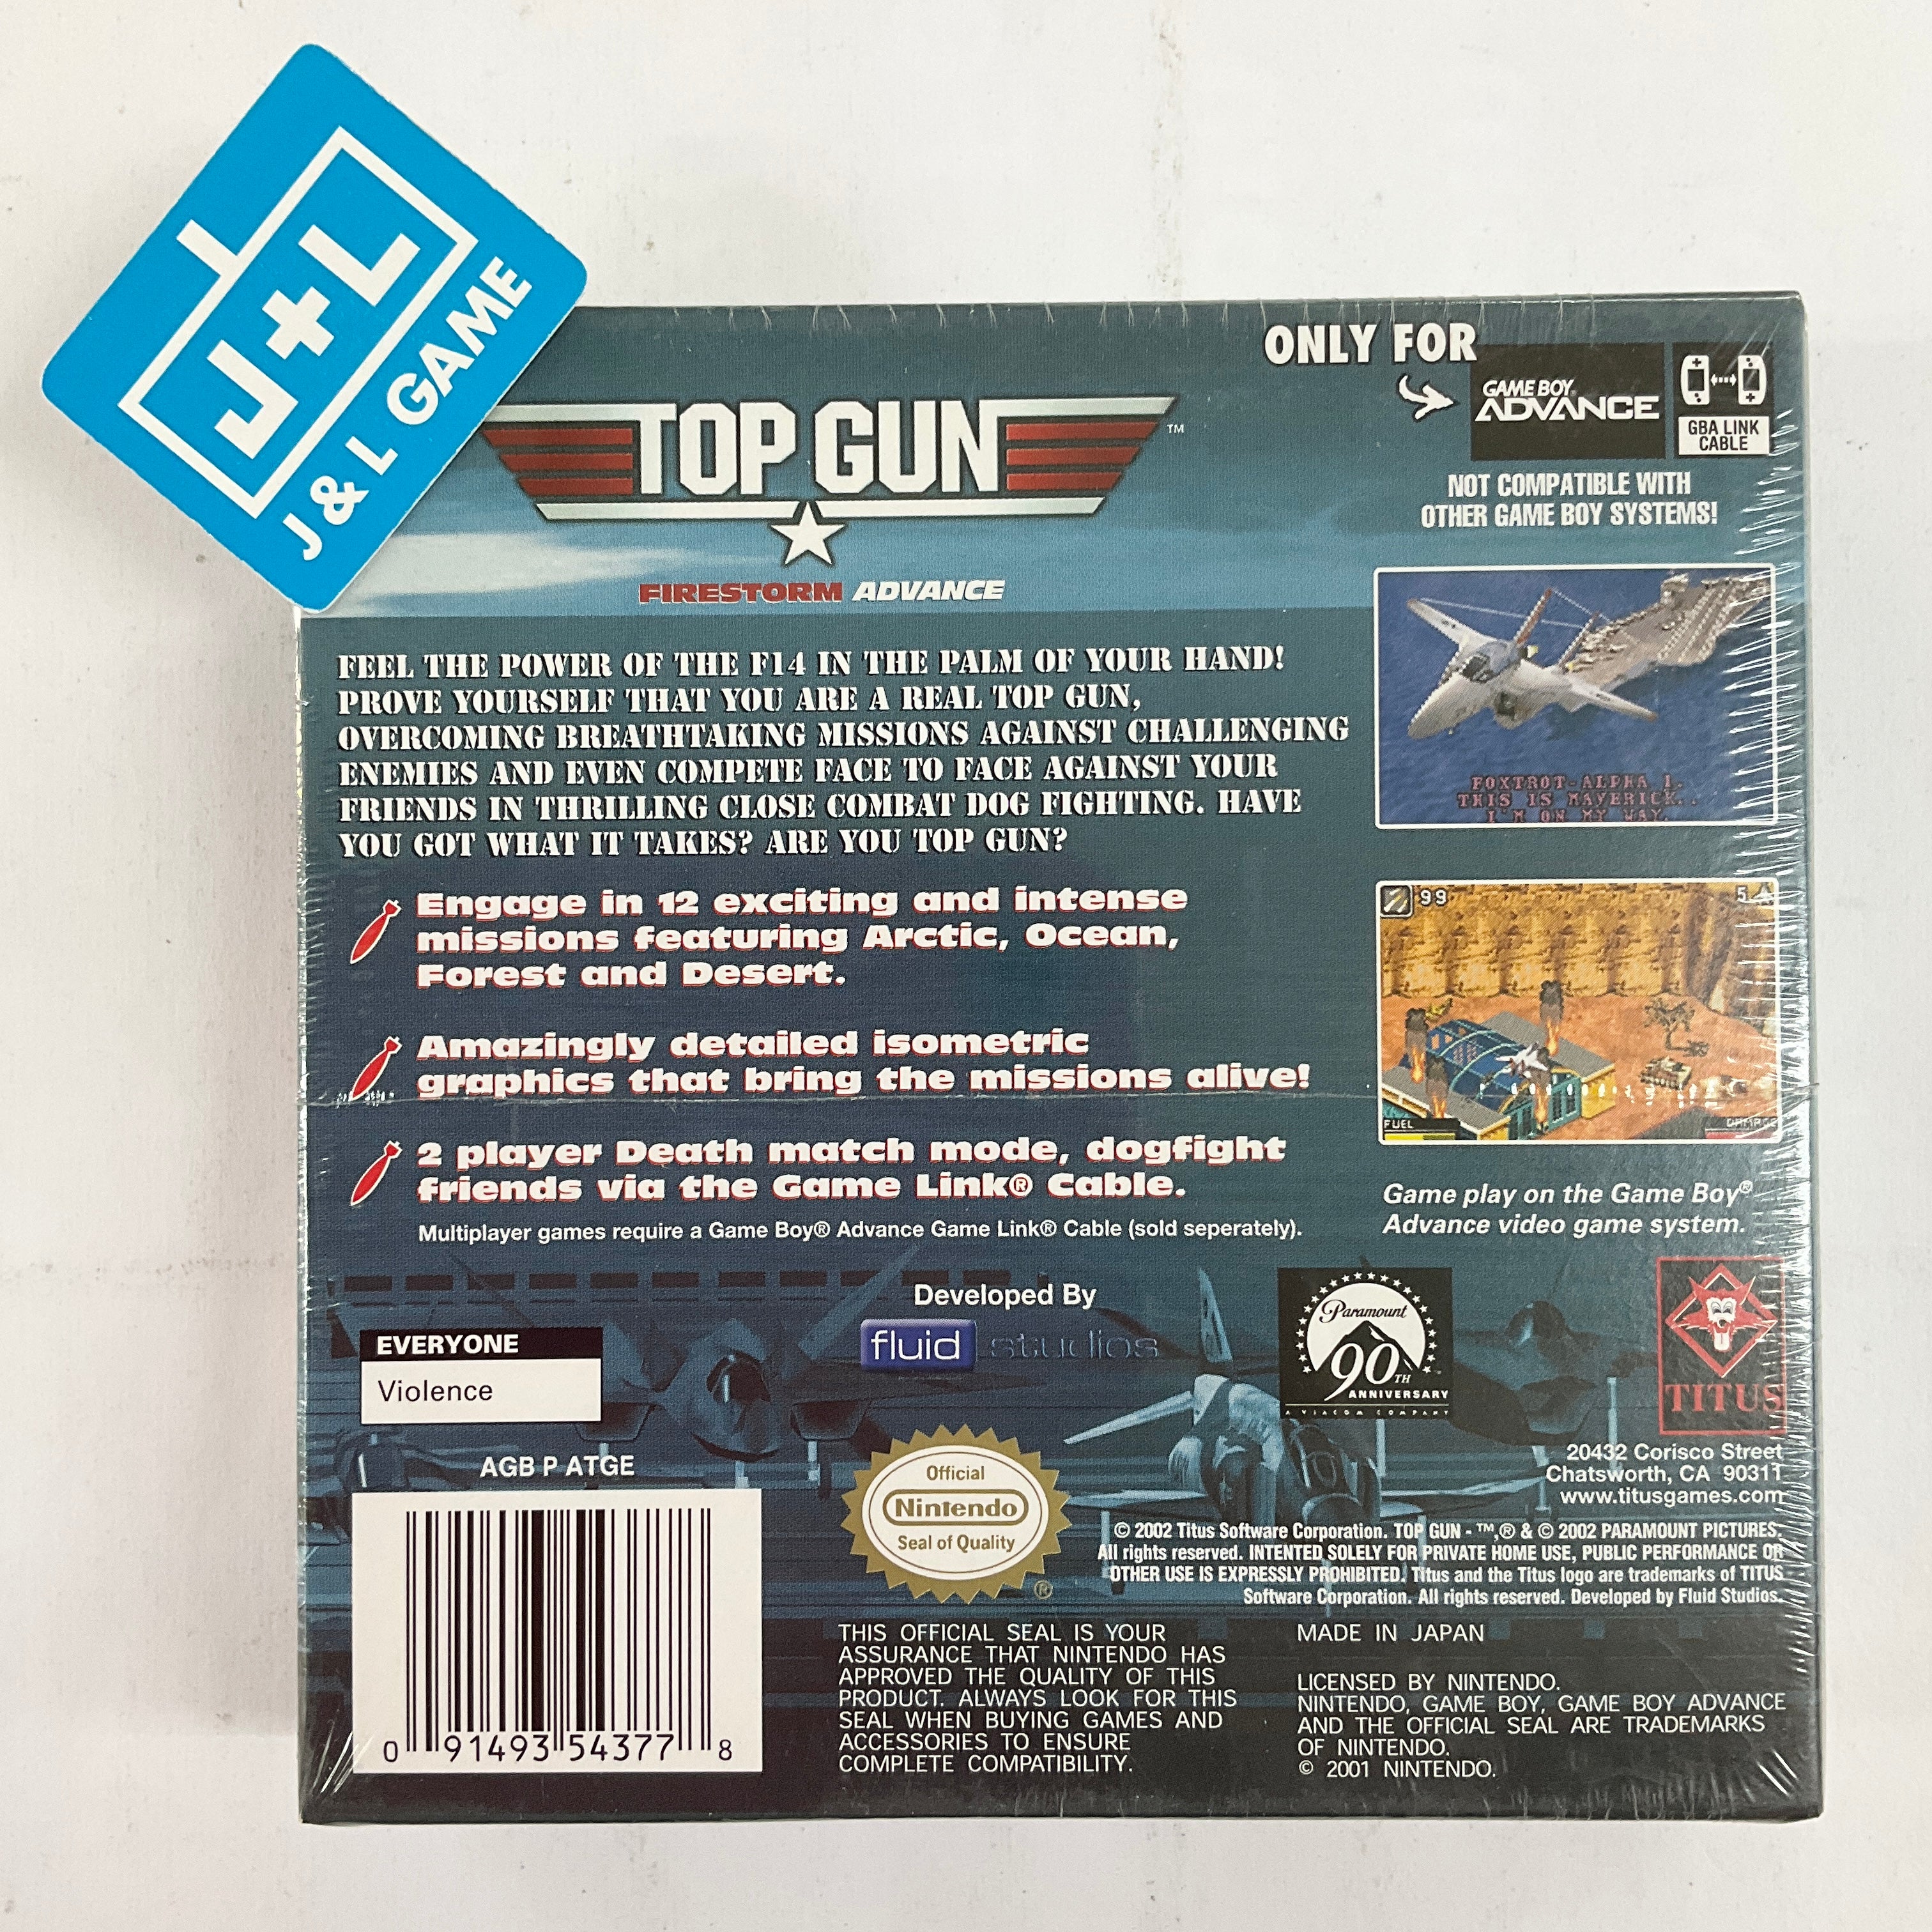 Top Gun: Firestorm Advance - (GBA) Game Boy Advance Video Games Titus Software   